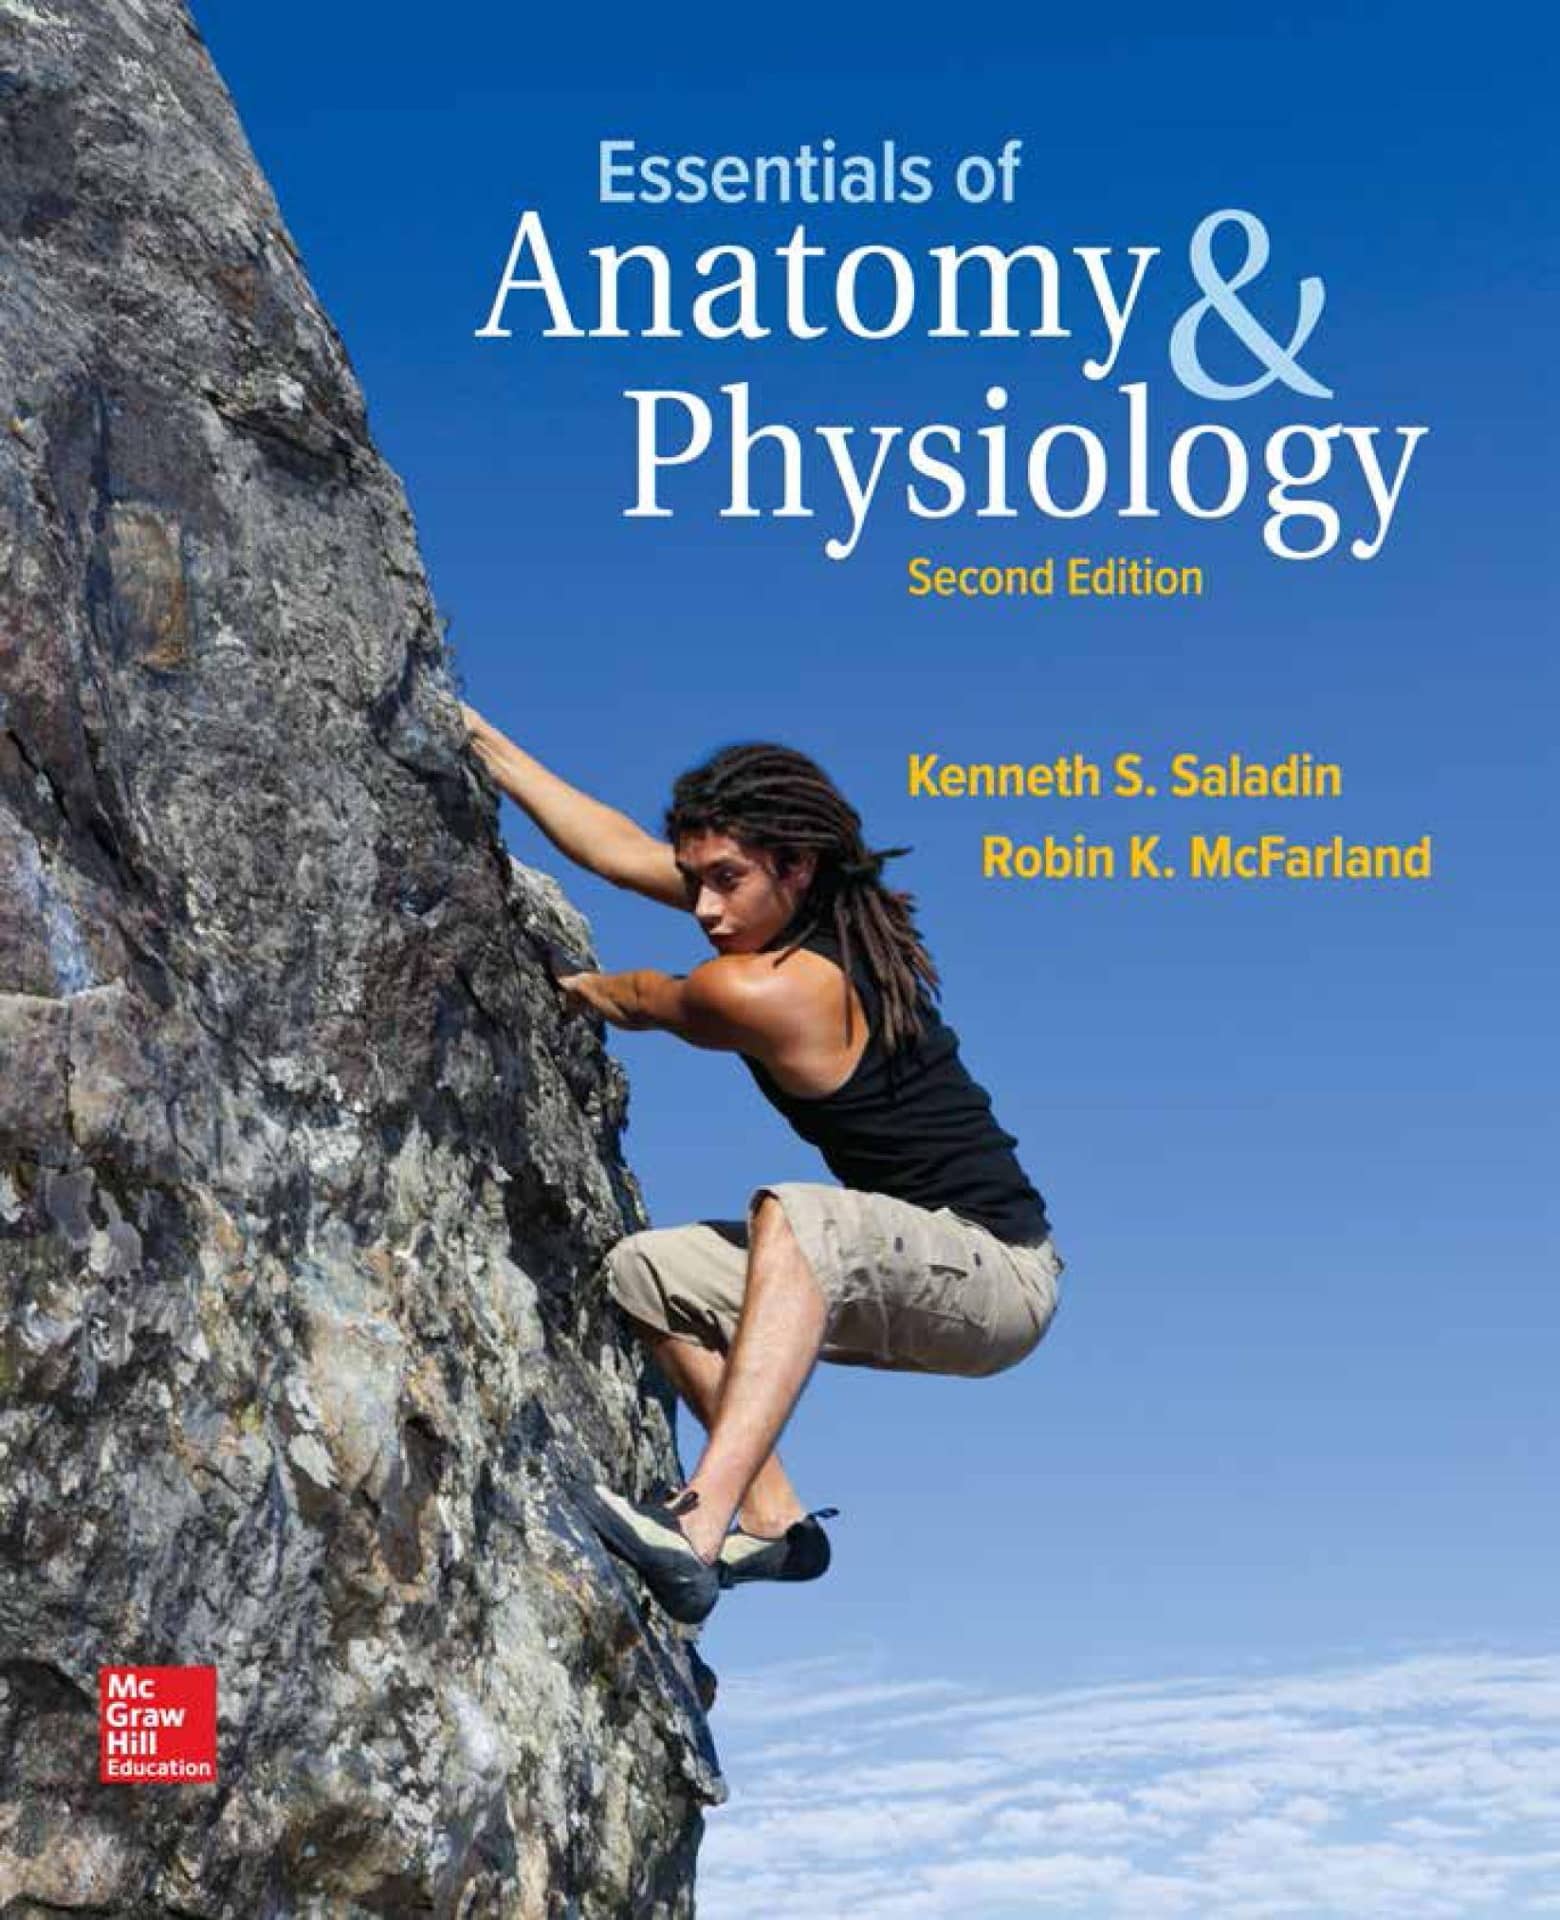 Essentials of anatomy & physiology PDF free - Doctor Plus Club